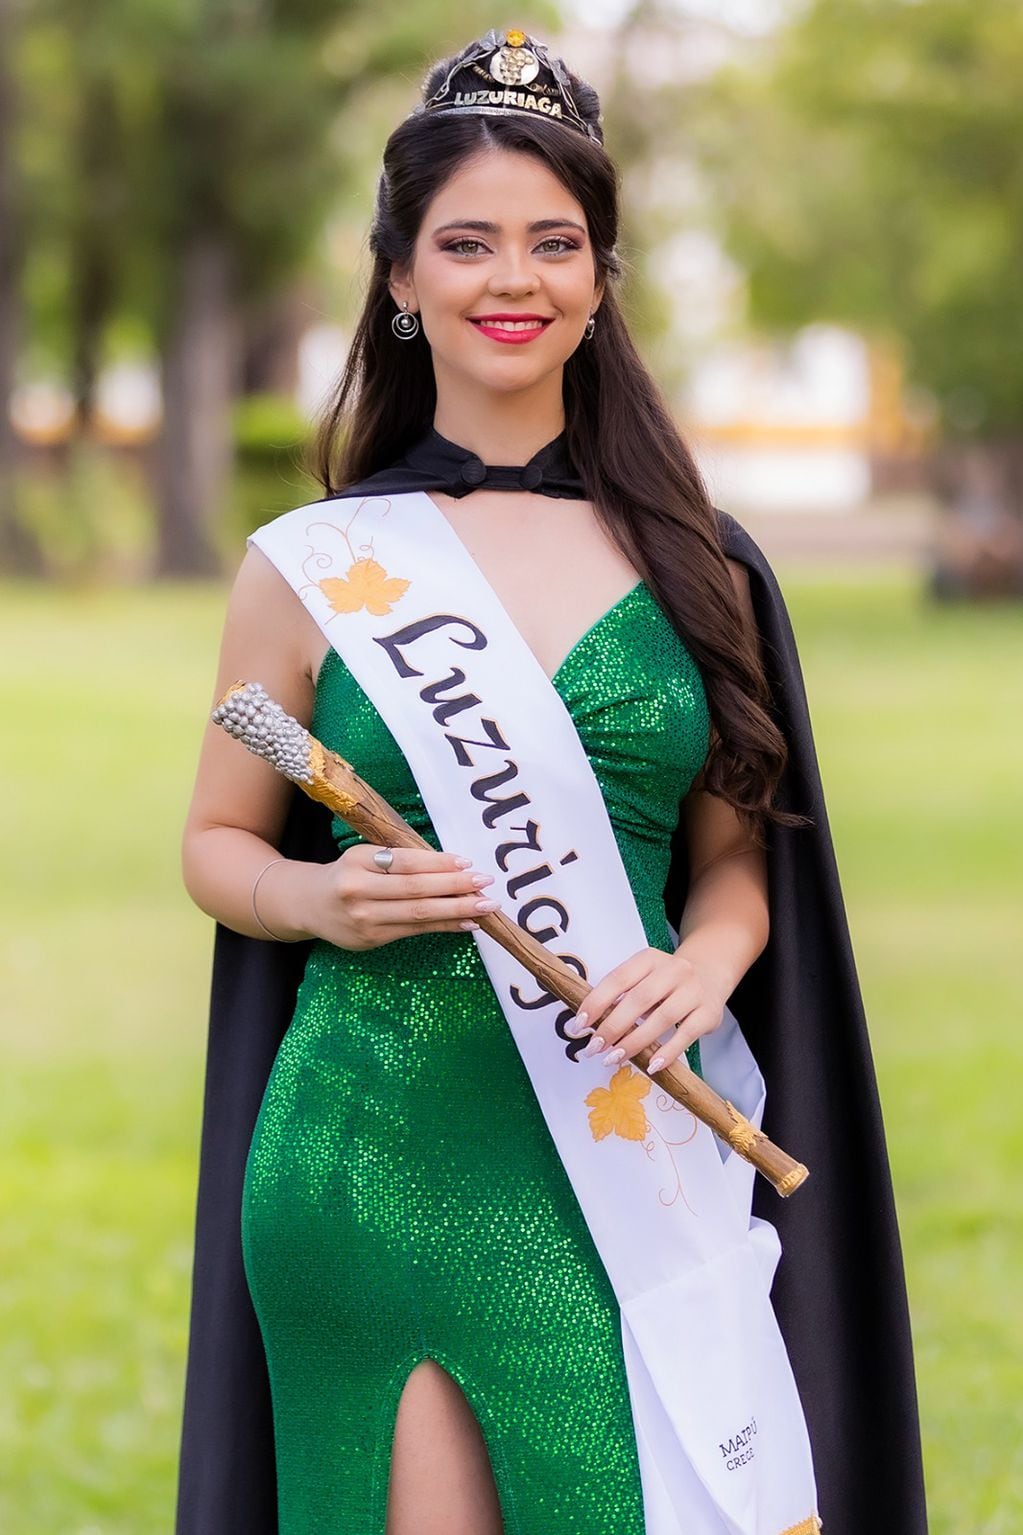 Karen Tobar Mendez, es la reina electa de Luzuriaga